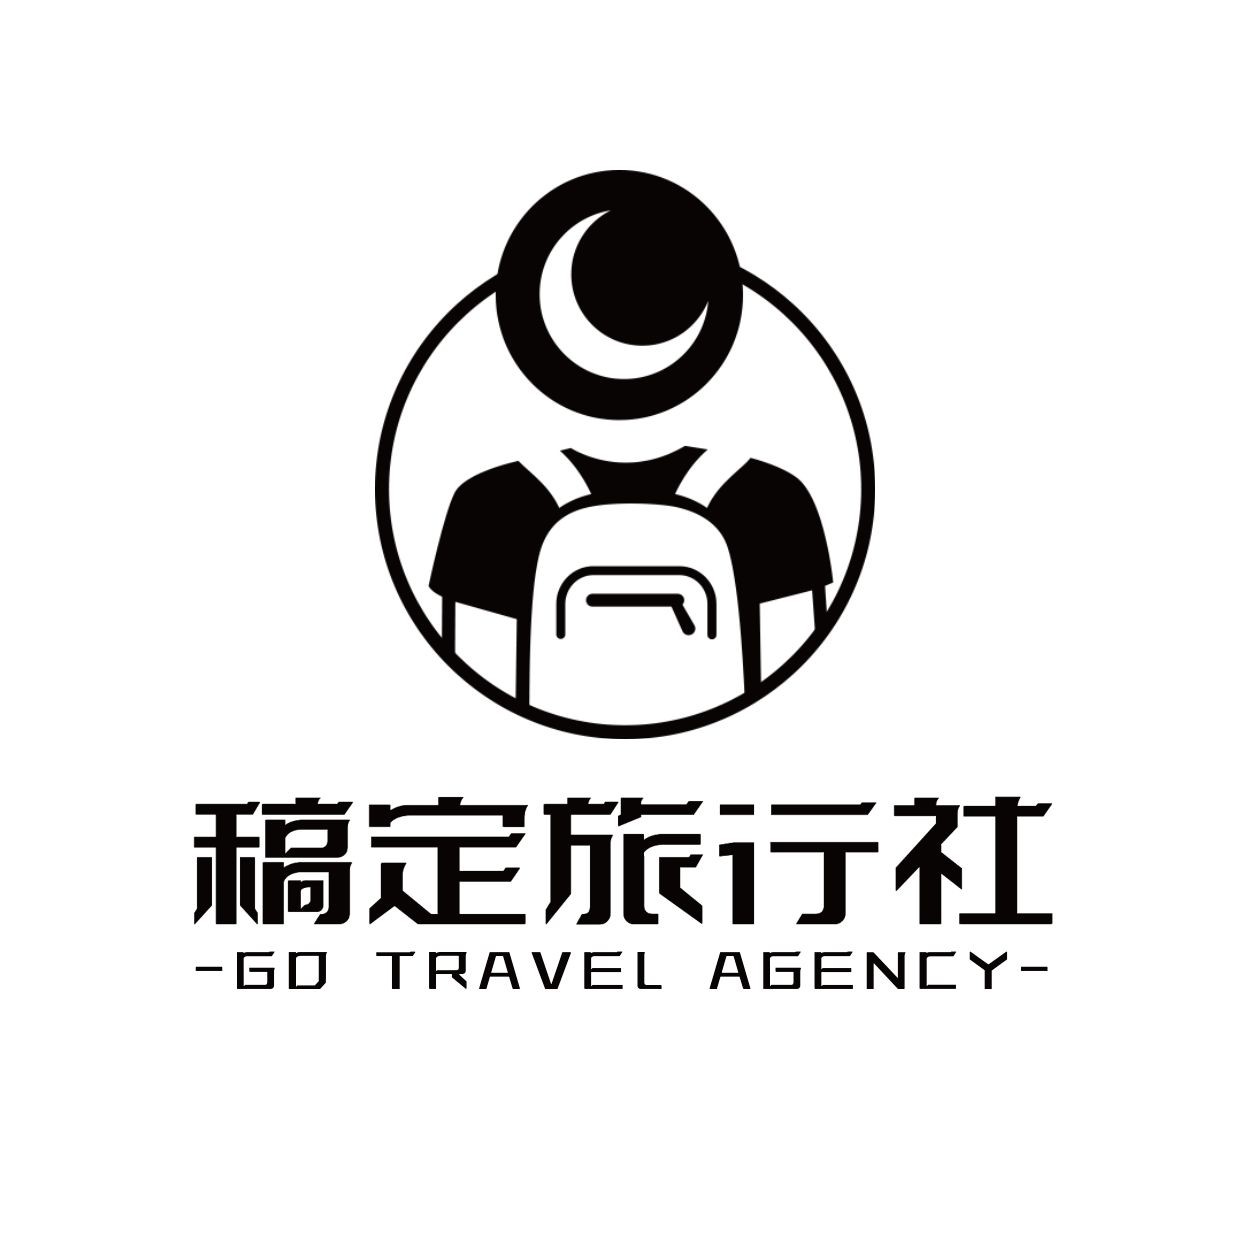 旅游出行品牌宣传创意logo头像